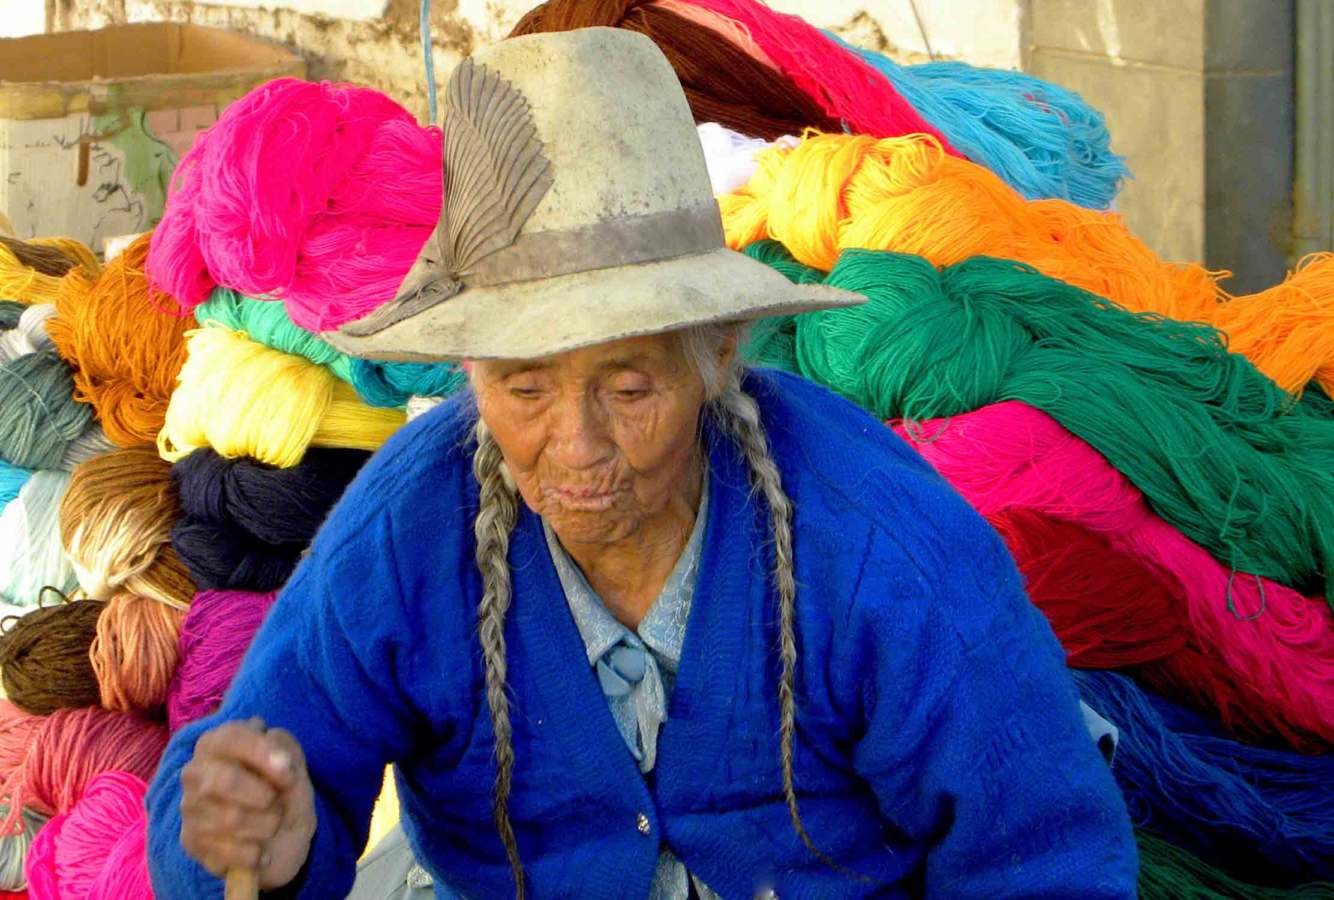 Peru’  del  nord,   le  civilta’  andine  prima  degli  Inca